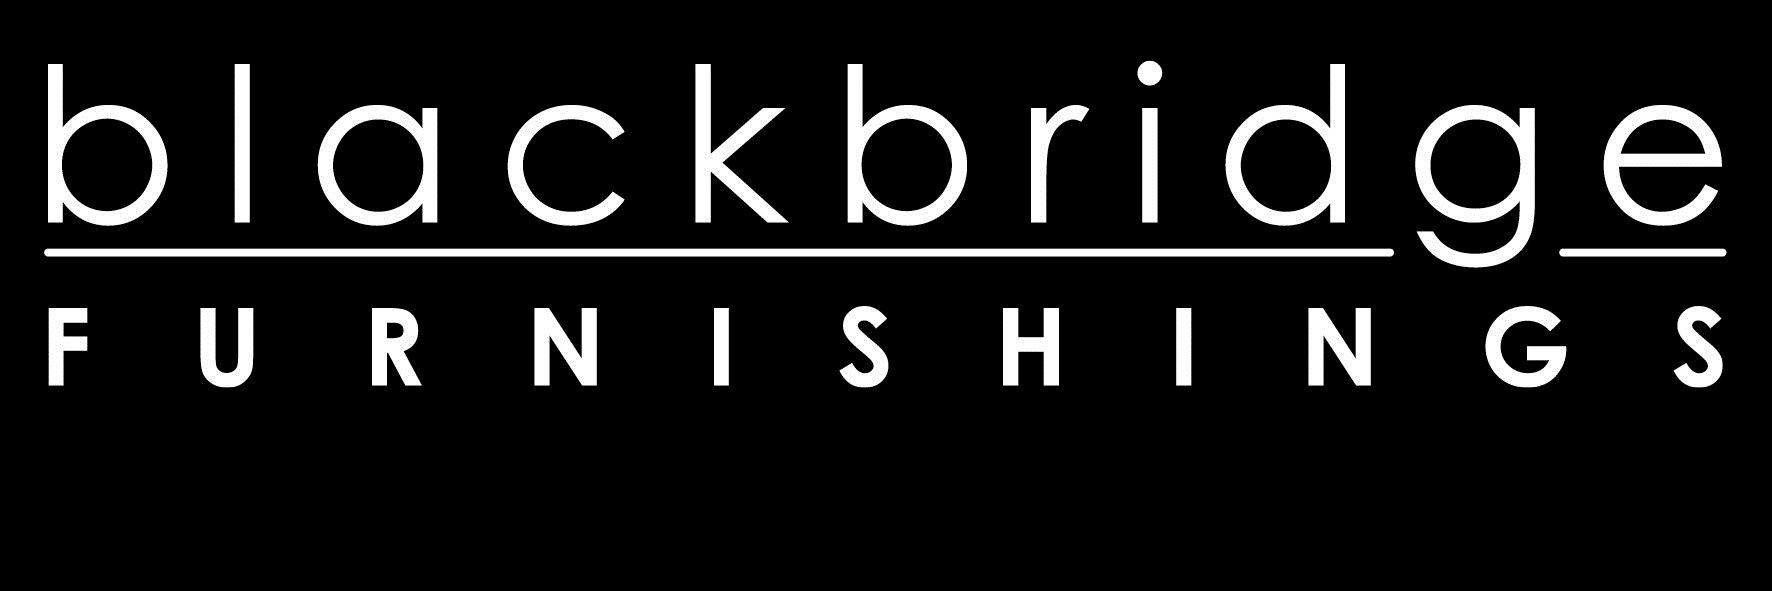 Blackbridge Furnishings Logo